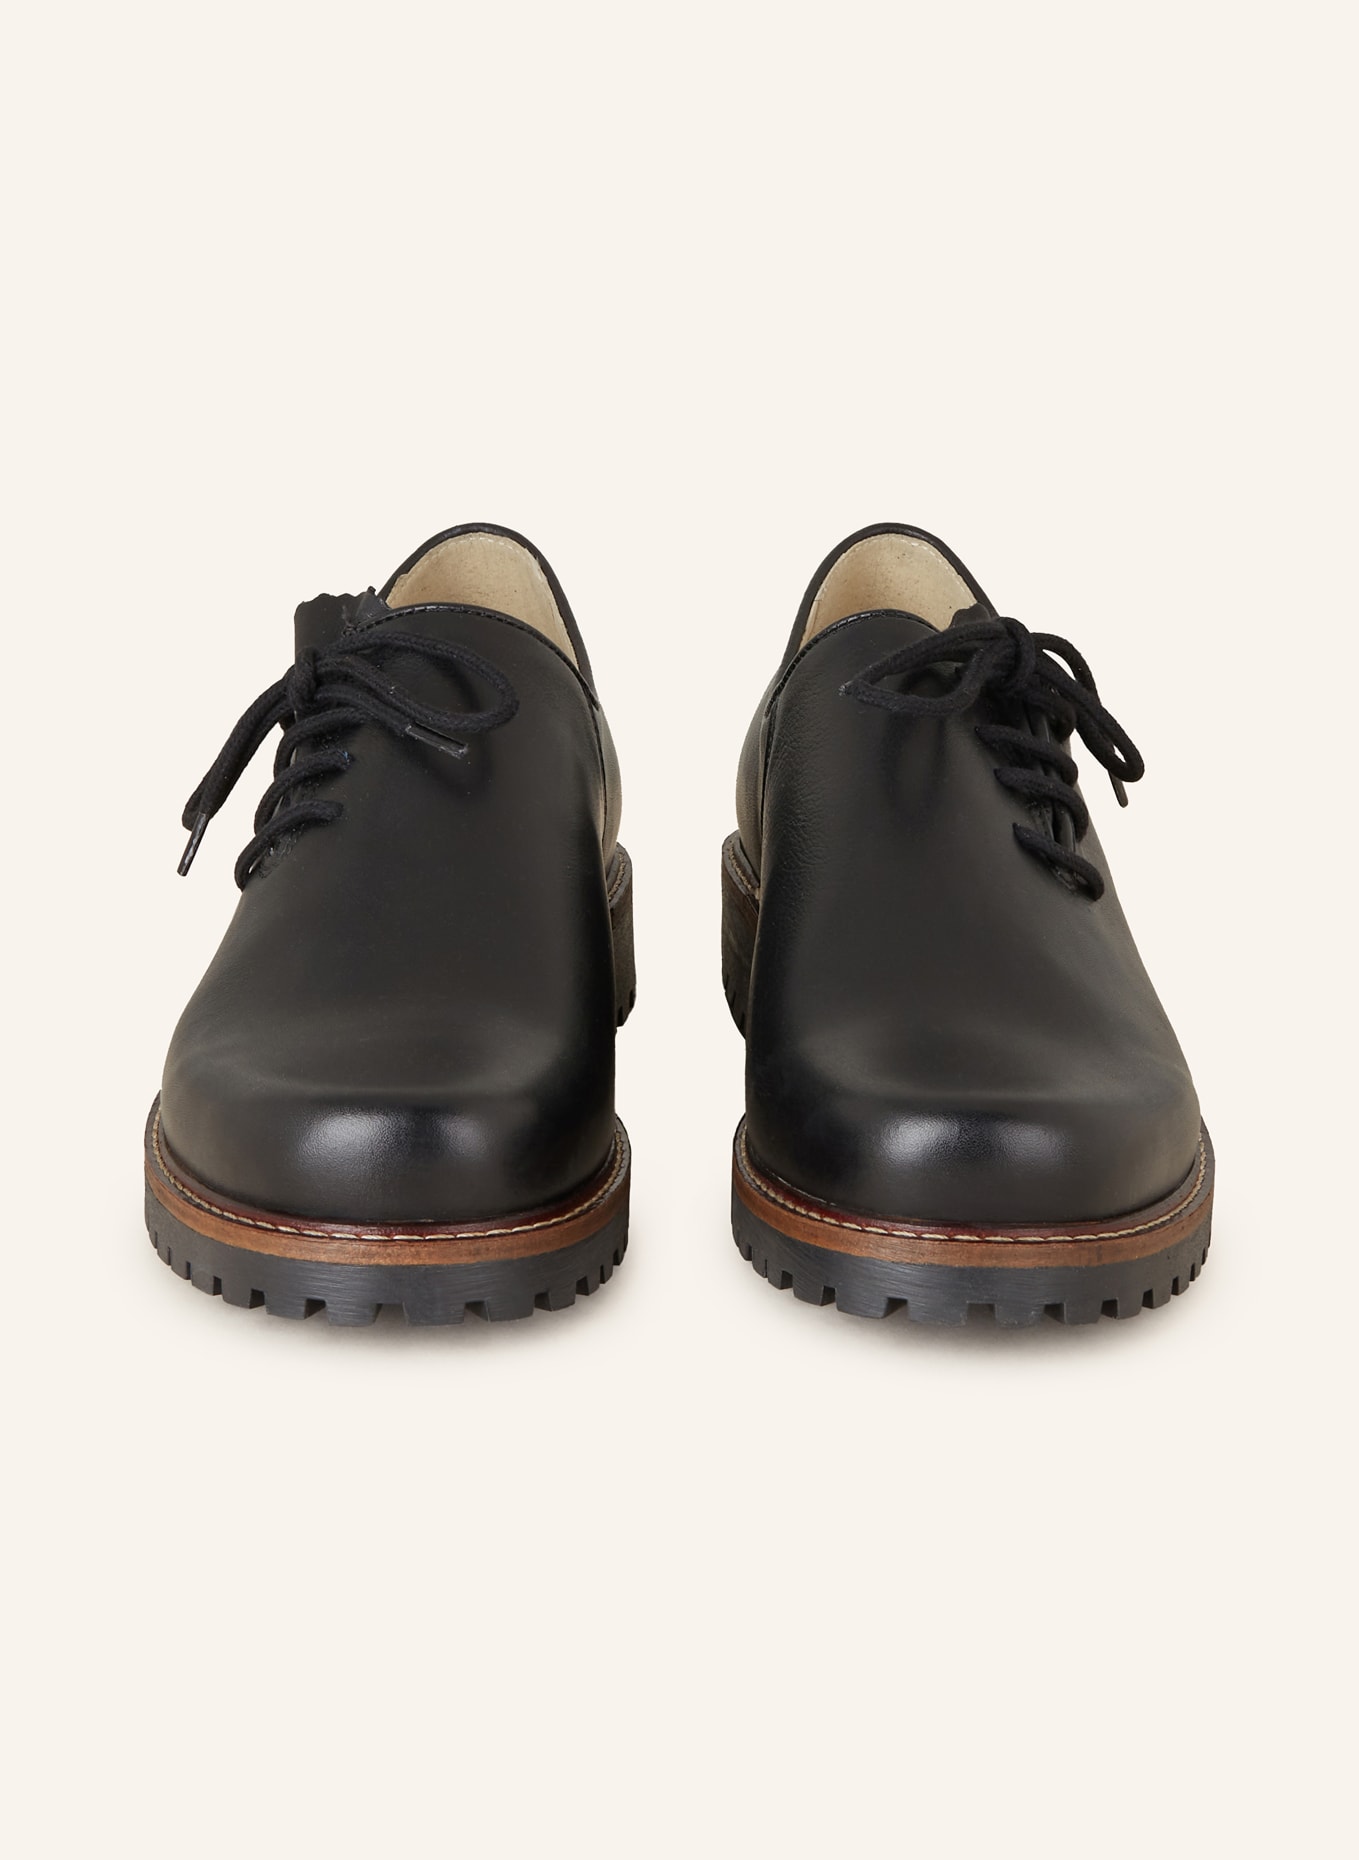 OSTARRICHI Trachten lace-up shoes, Color: BLACK (Image 3)